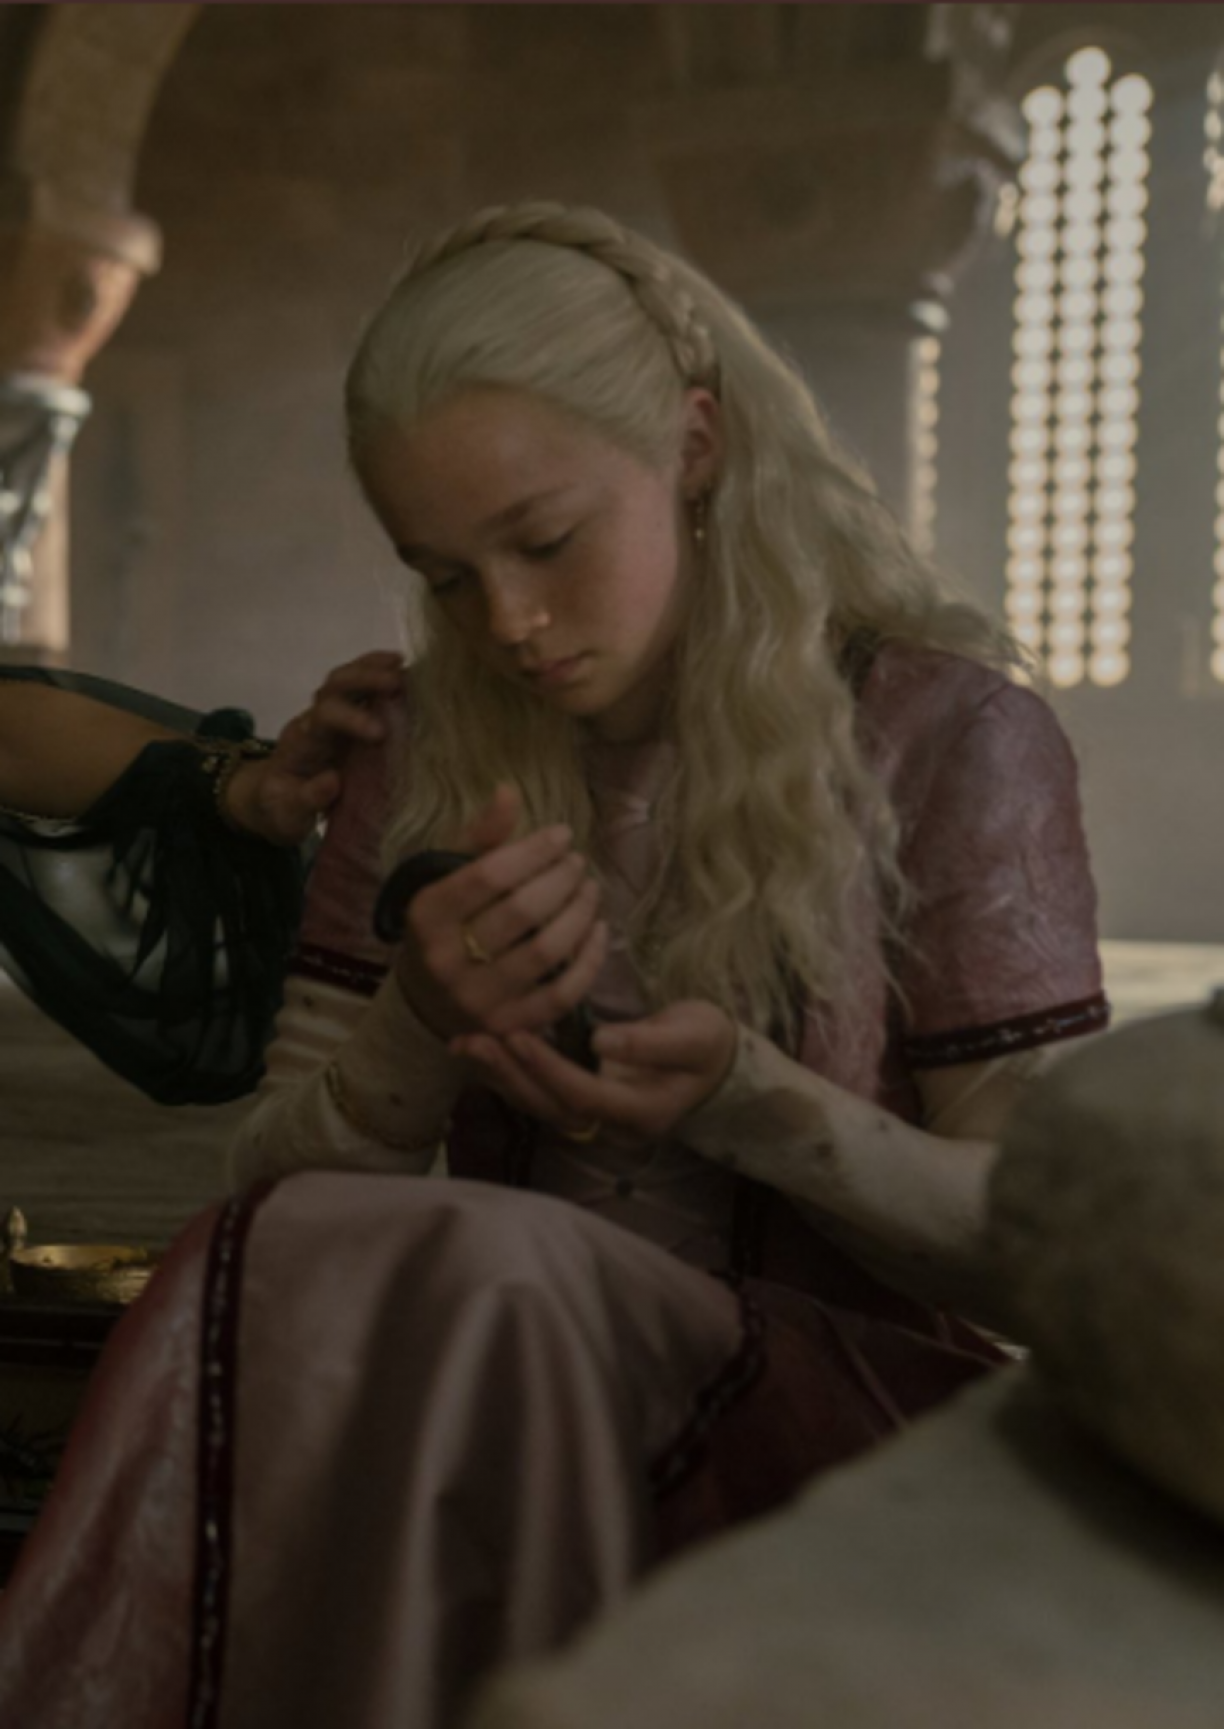 HOUSE OF THE DRAGON: Por que o príncipe Aemond Targaryen não tem um dragão,  em A Casa do Dragão?